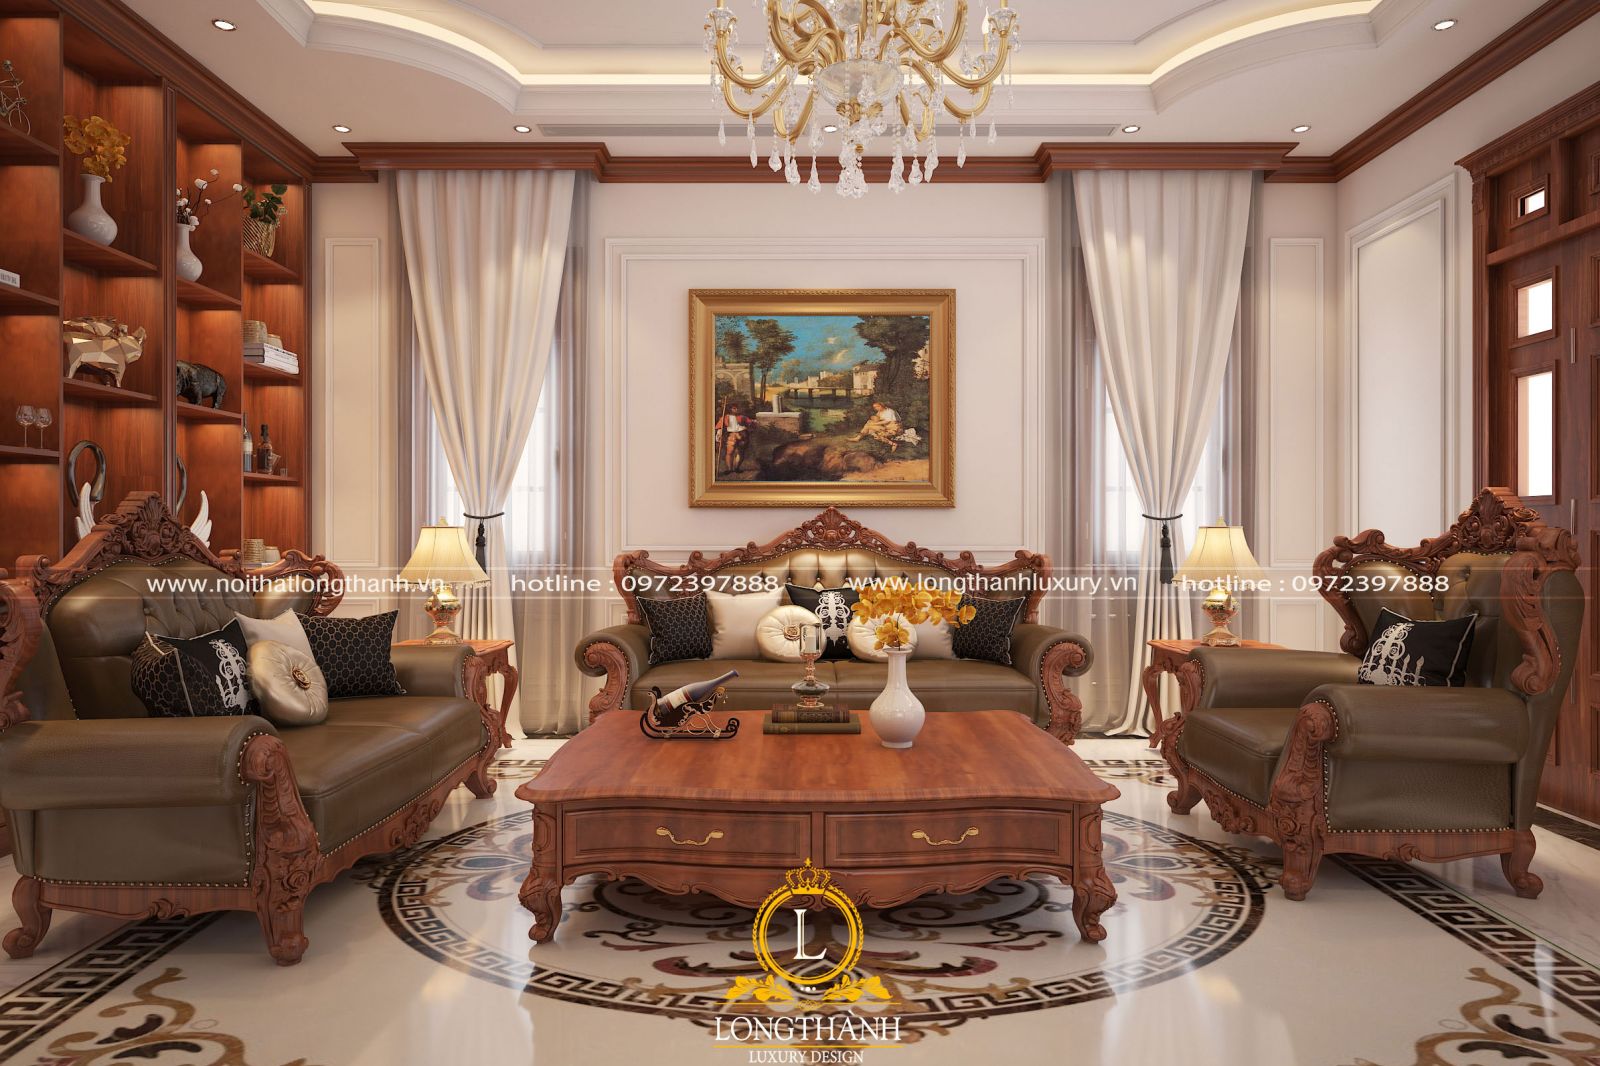 Phòng khách cổ điển Việt Nam với nét đẹp hoài cổ